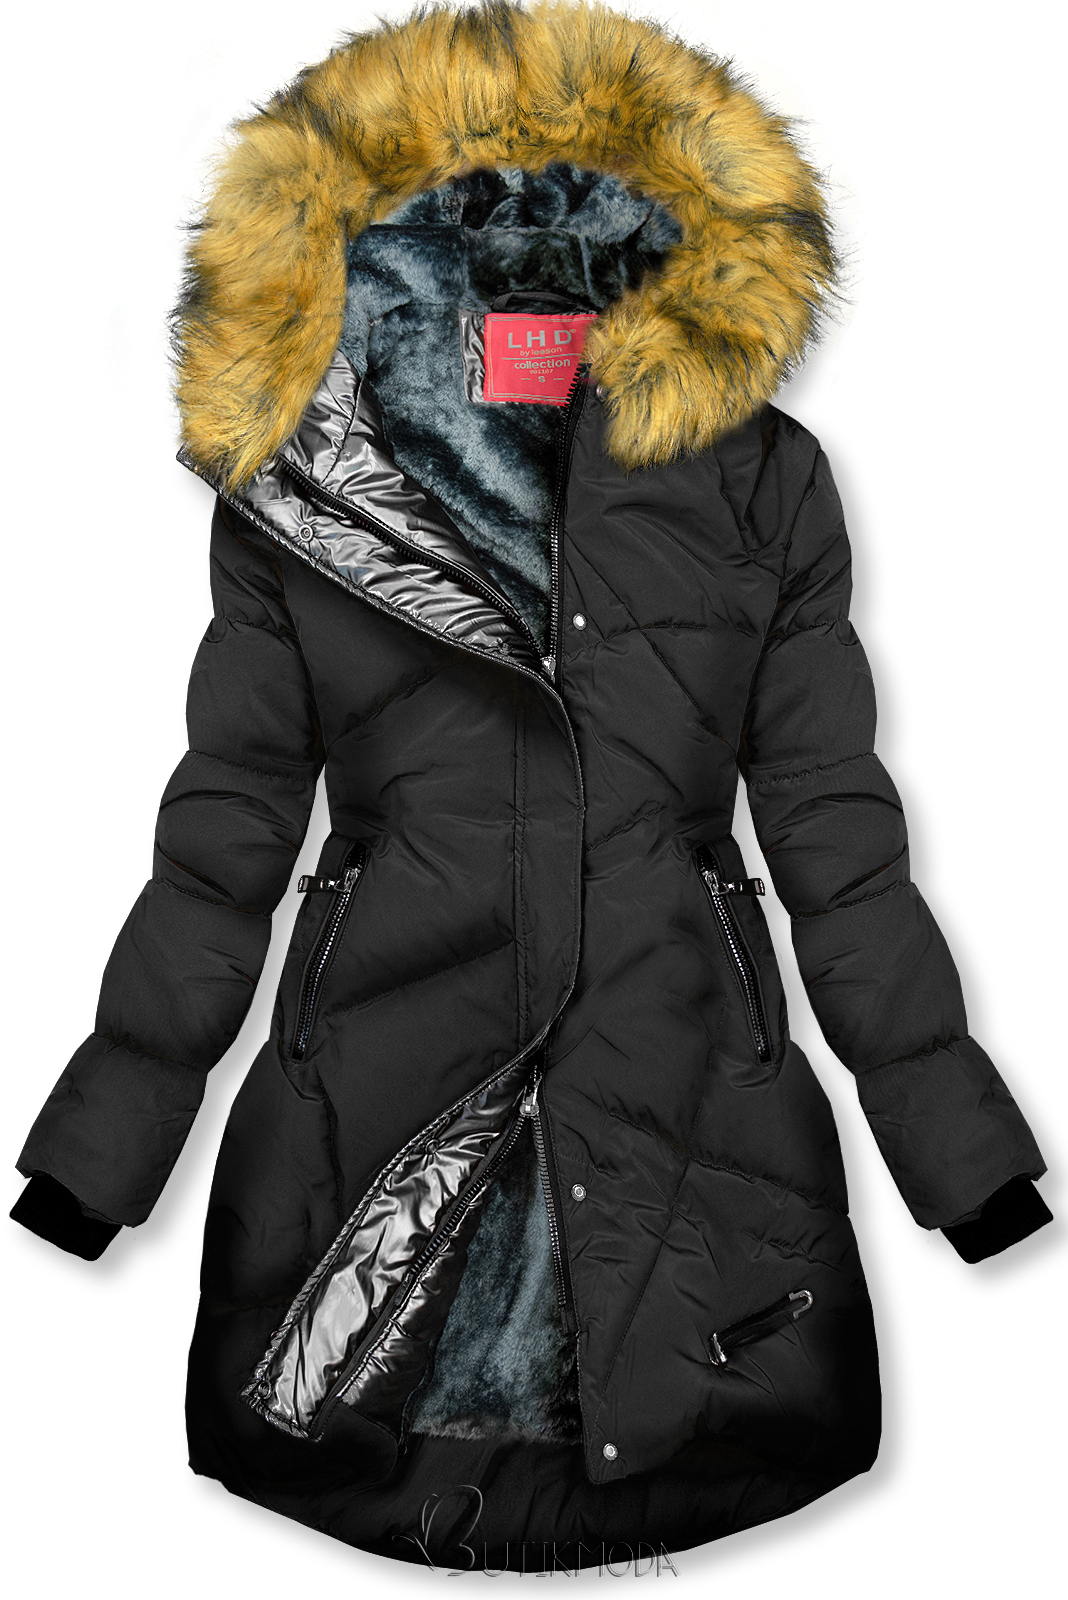 Fekete és szürke színű téli kabát ezüstszürke színű szegéllyel